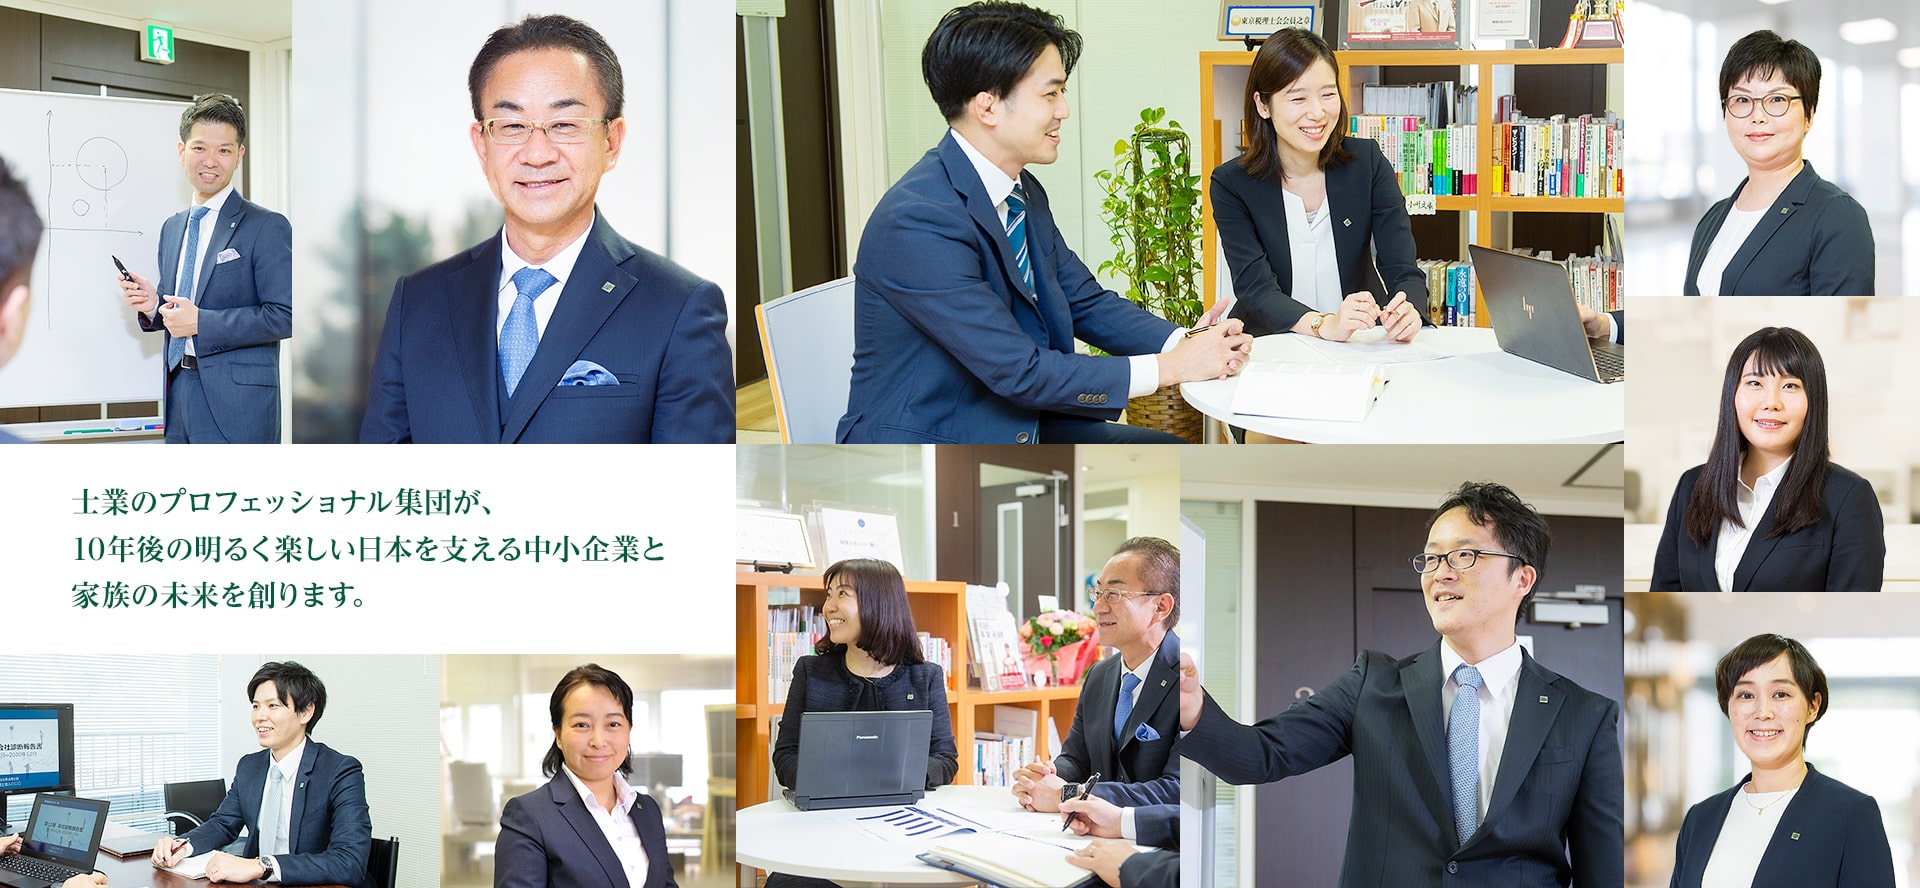 士業のプロフェッショナル集団が、 10年後の明るく楽しい日本を支える中小企業と 家族の未来を創ります。